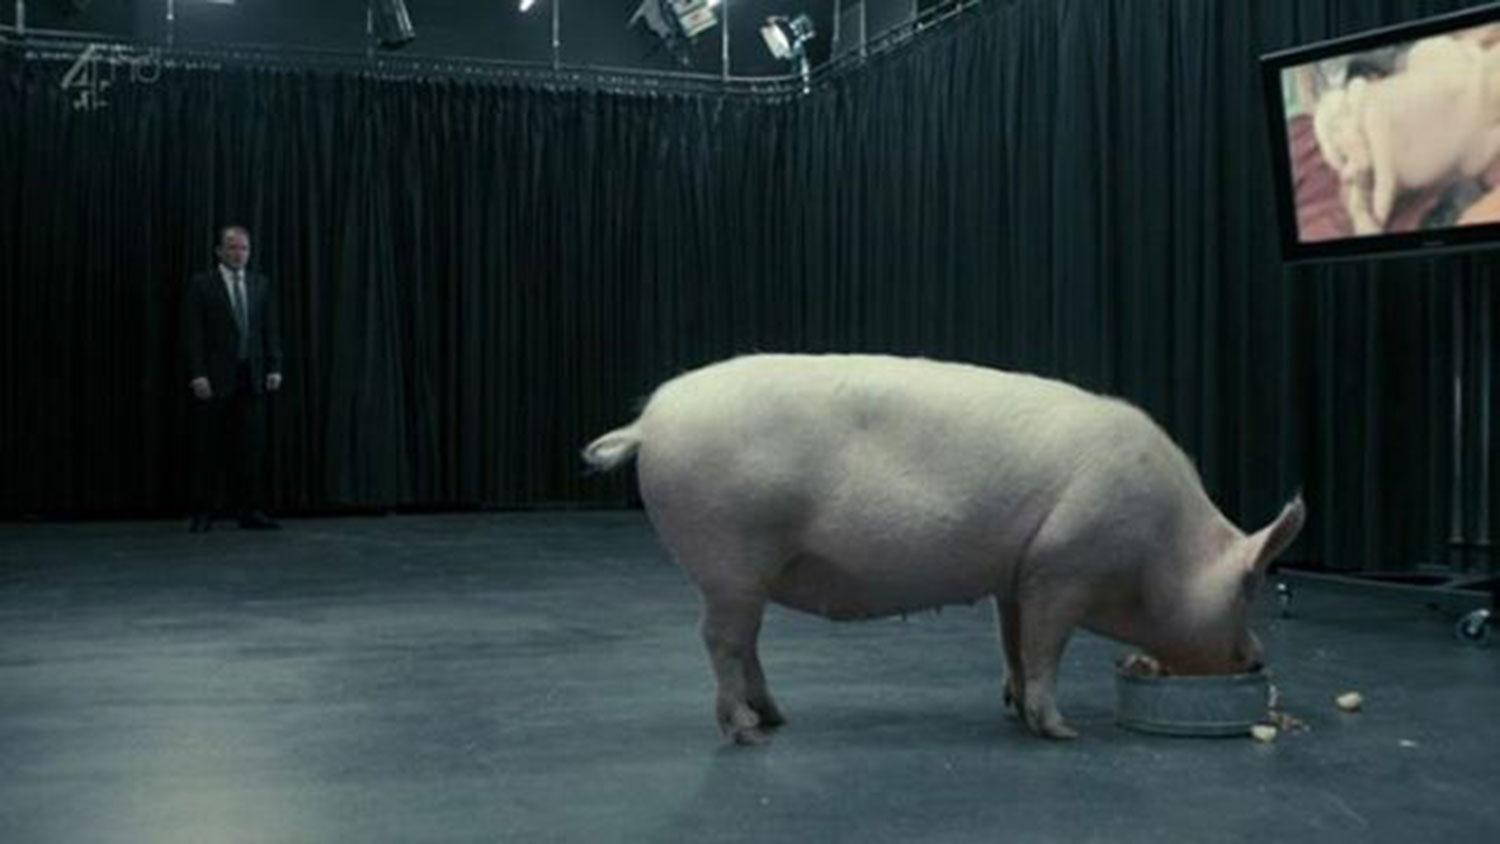 Avsnittet där en fiktiv premiärminister tvingades ligga med en gris fick mycket uppmärksamhet.